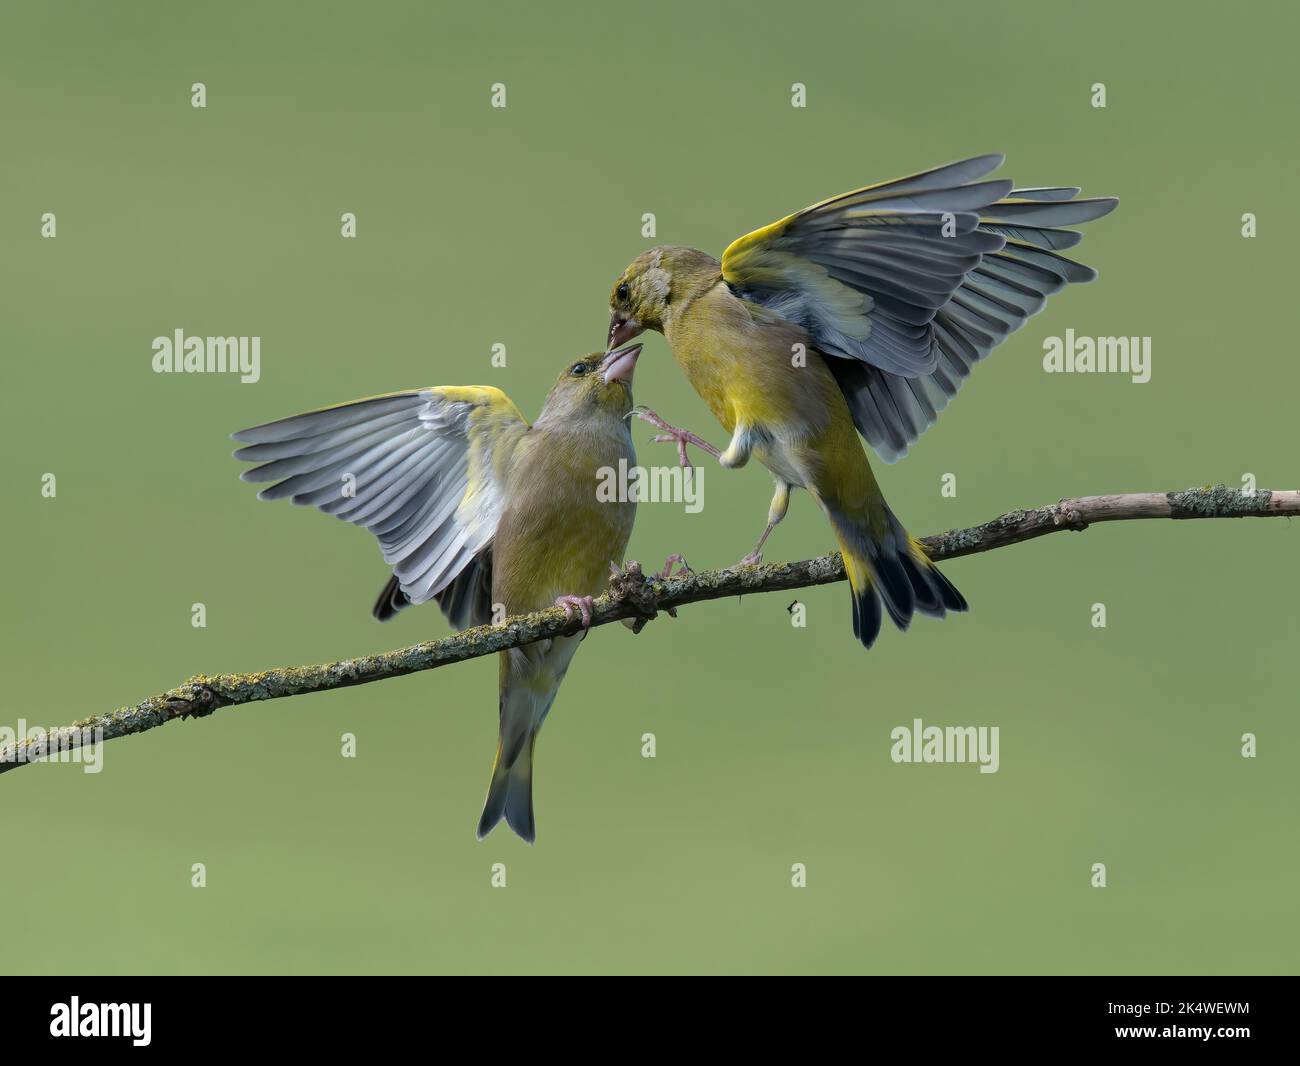 two European Greenfinch, Carduelis chloris, fighting, Lancashire UK Stock Photo